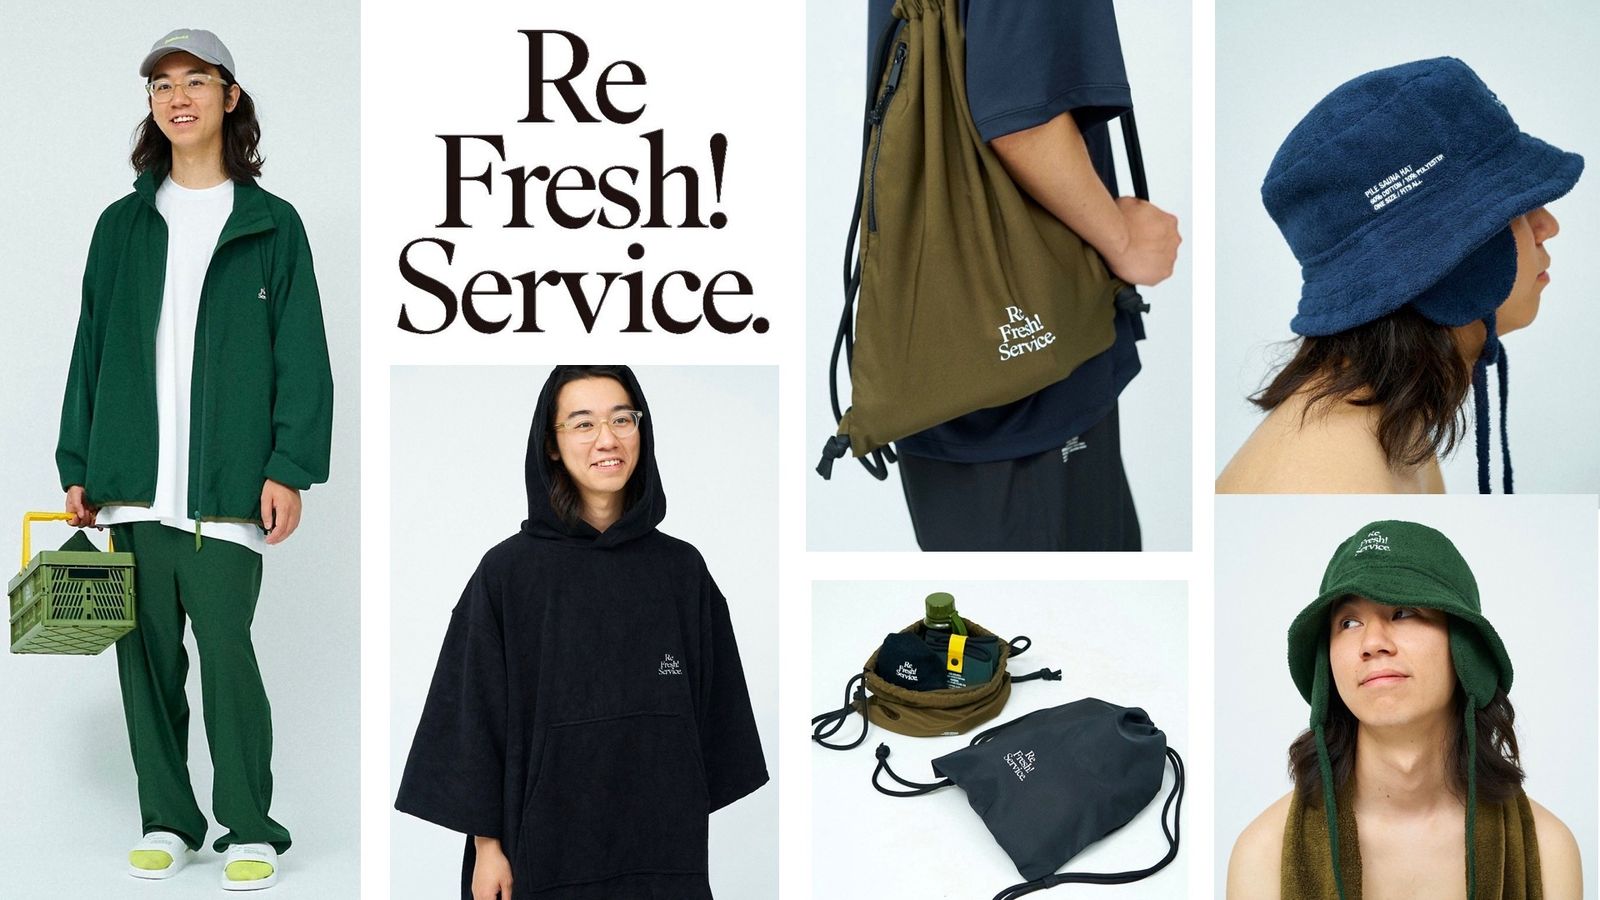 オンライン公式ストア - FreshService ReFresh!Service サウナハット